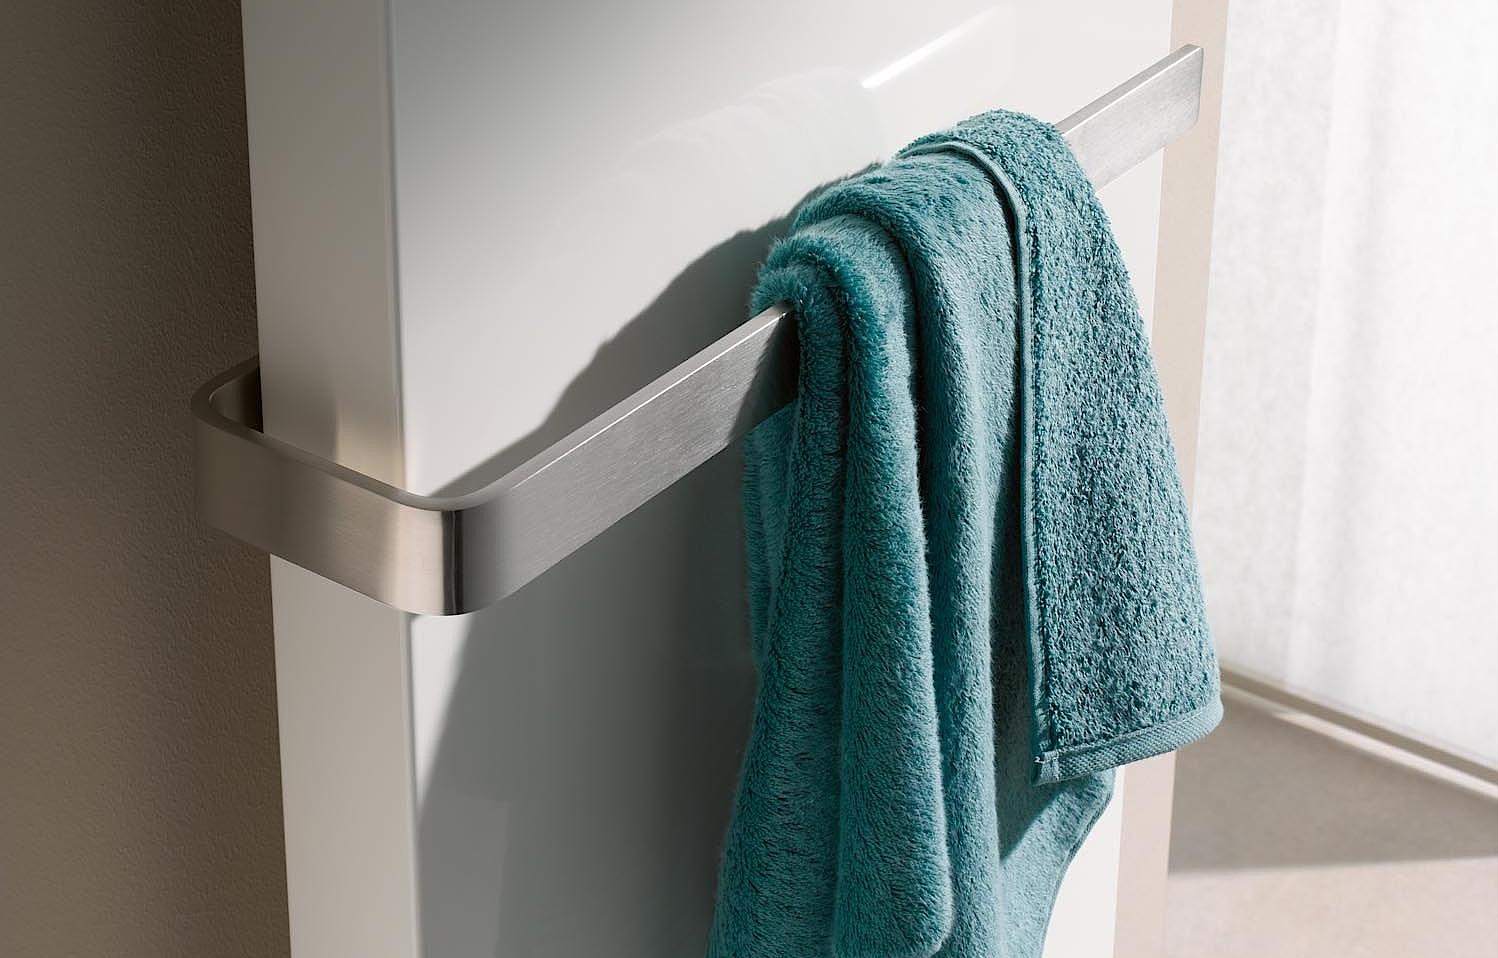 Kermi Rubeo dizaino radiatorių - rankšluosčių džiovintuvų nerūdijančio plienokabykla rankšluosčiams gali būti montuojama bet kuriame aukštyje.